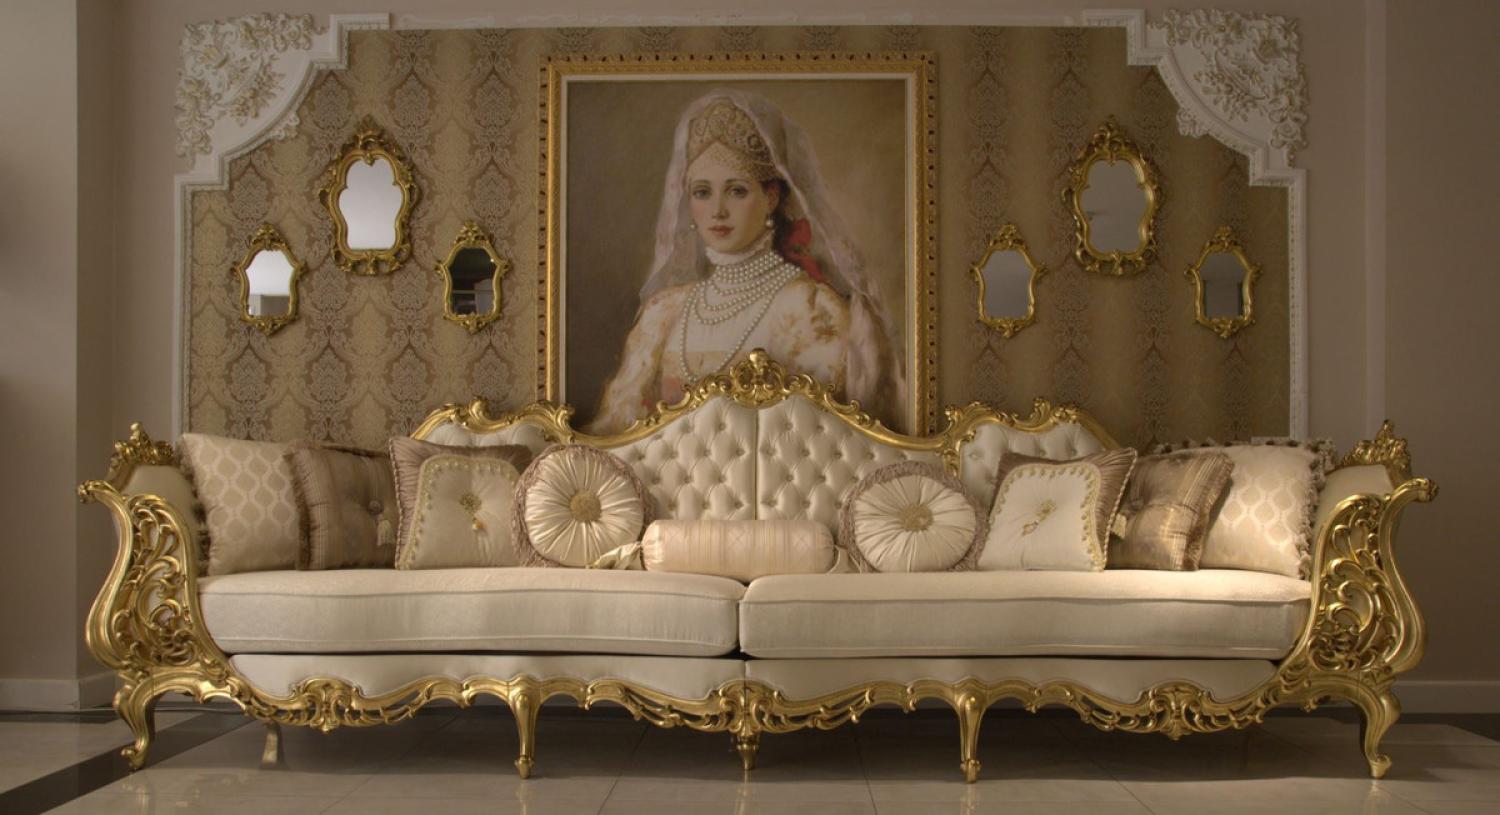 Casa Padrino Luxus Barock Wohnzimmer Sofa Creme / Gold 360 x 100 x H. 115 cm - Prunkvolles Sofa im Barockstil - Edle Barock Wohnzimmer Möbel Bild 1